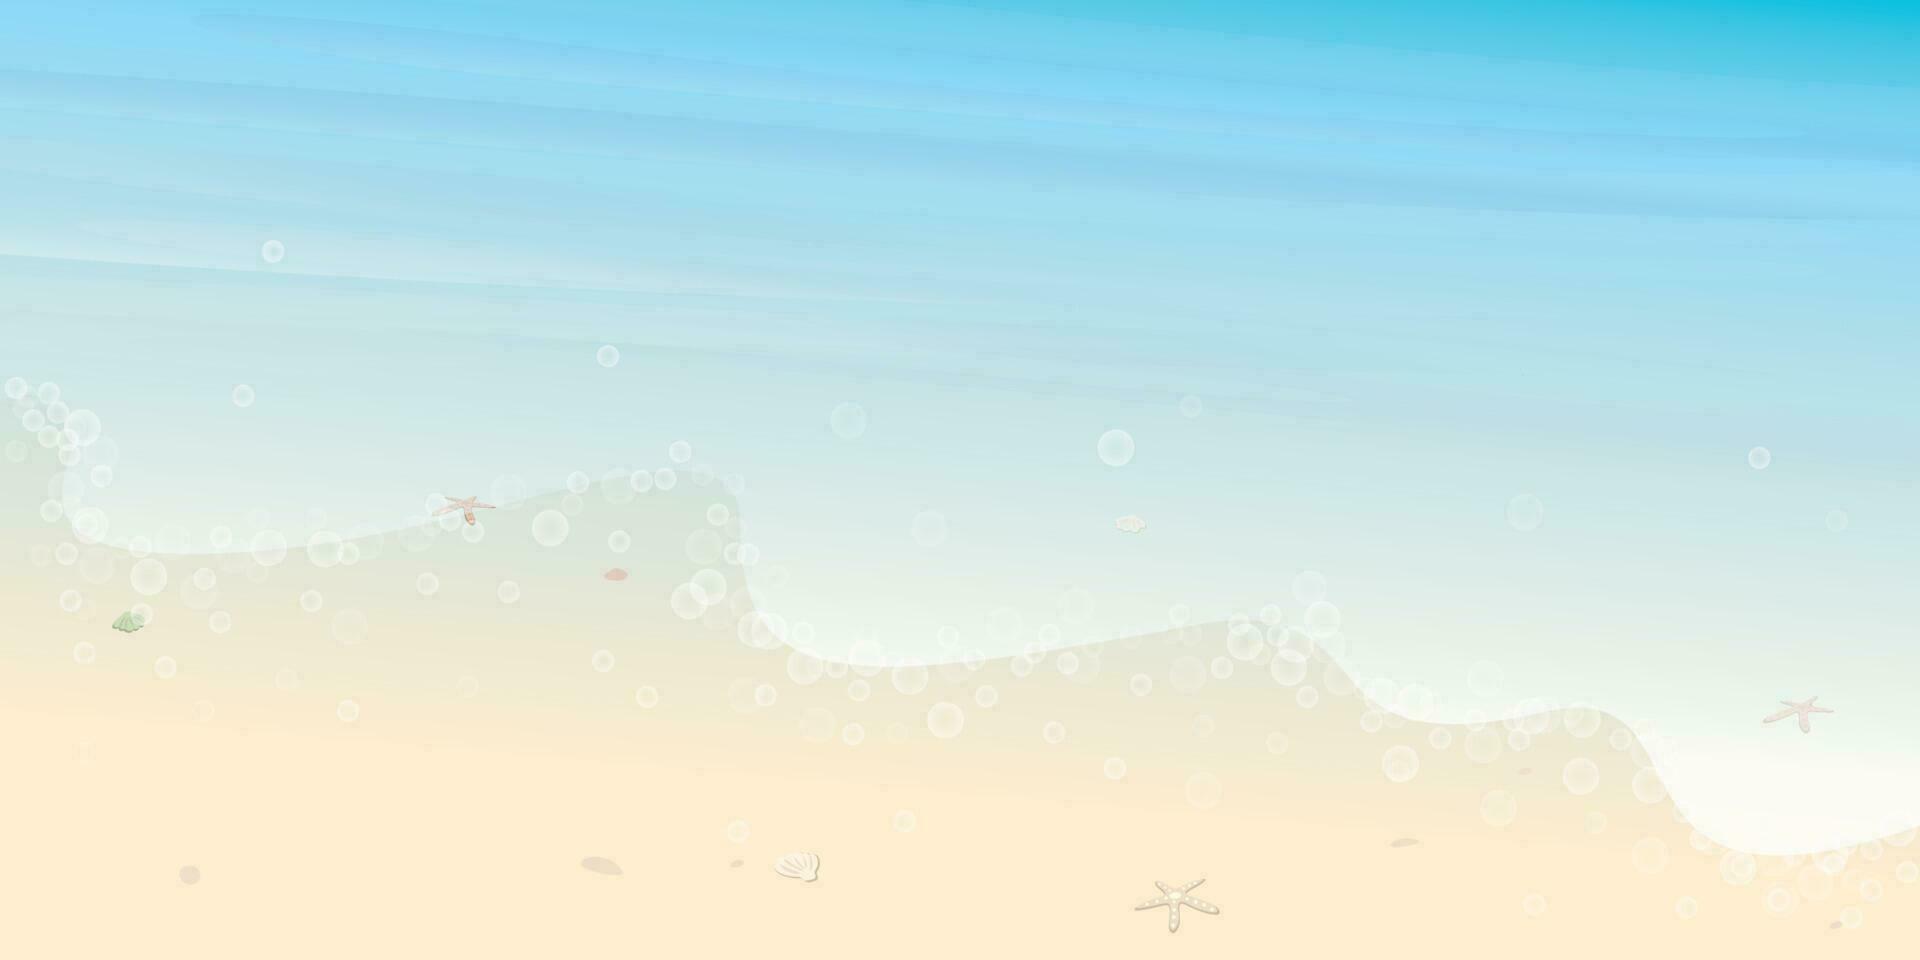 tropical plage avec vague, coquilles et étoile de mer sur blanc le sable vecteur illustration. bord de mer concept avec Vide espace.